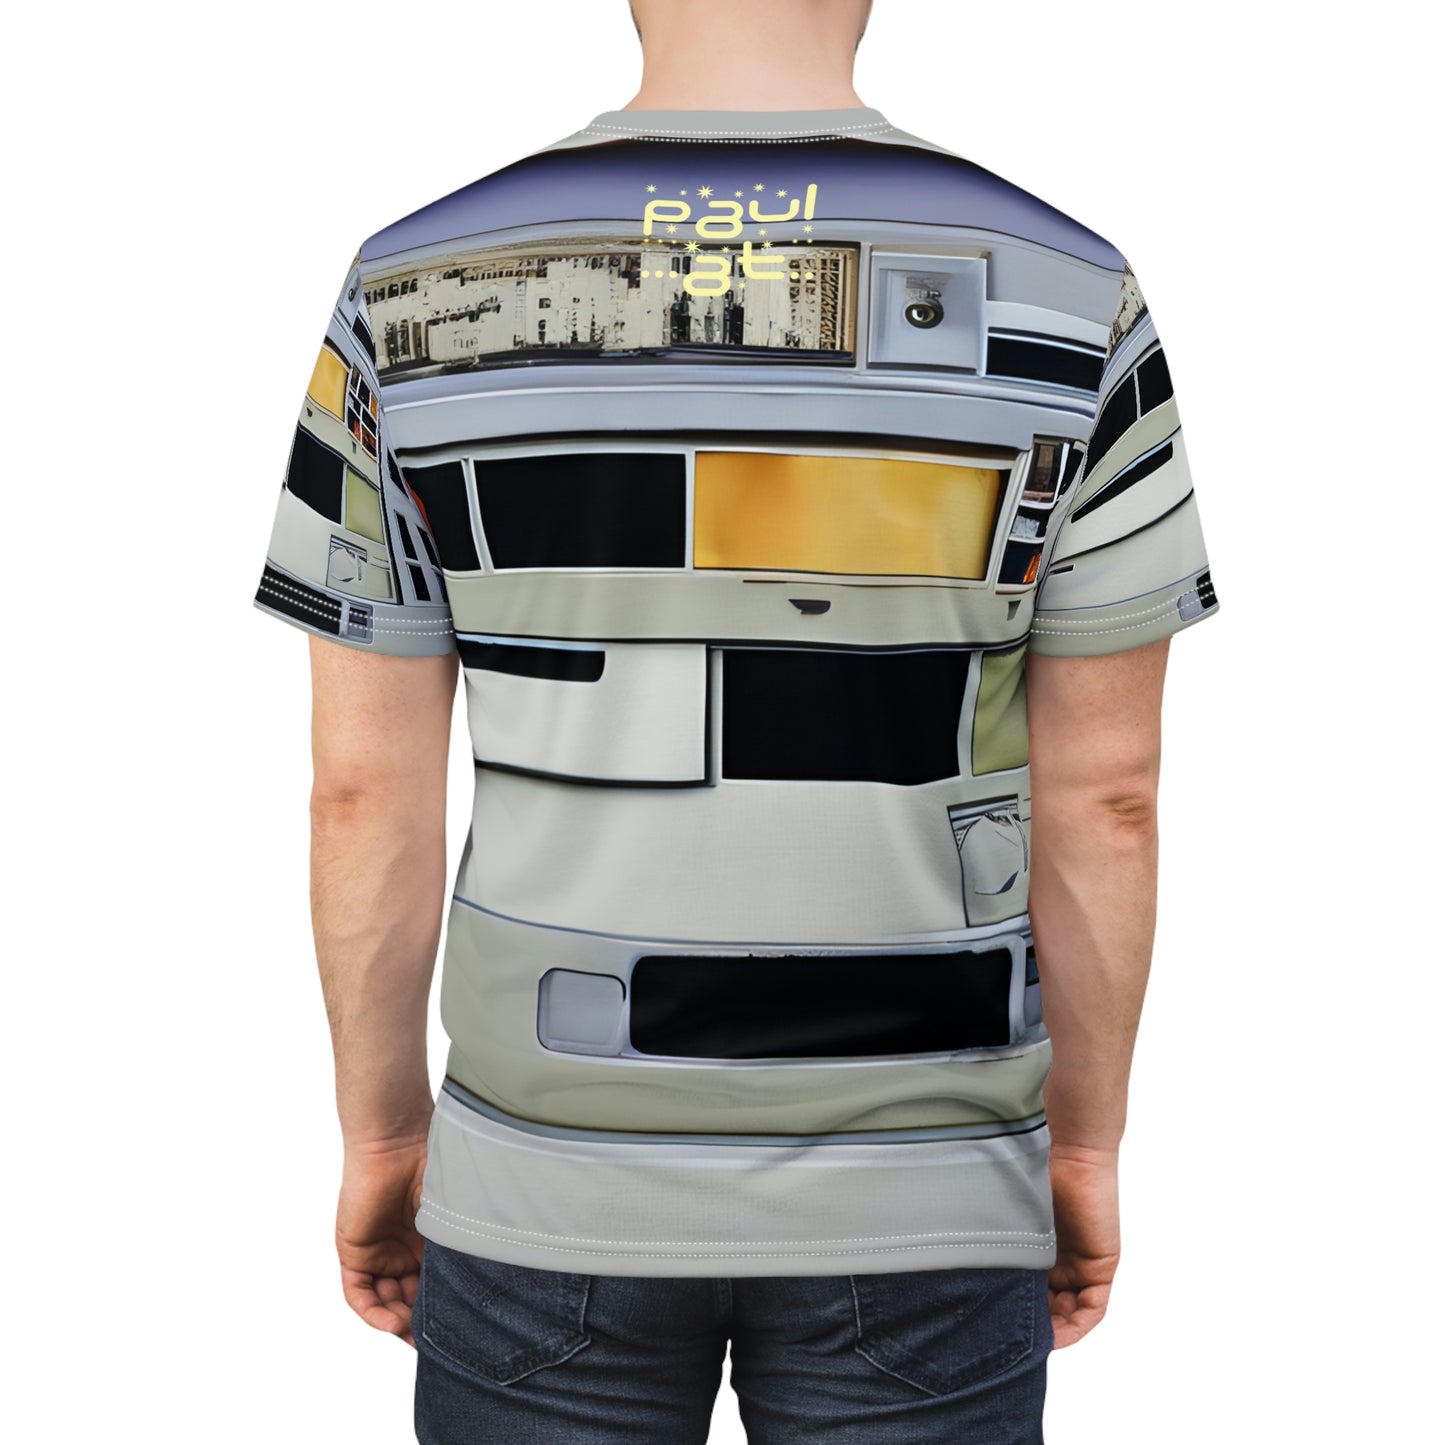 Software Drives Unisex T-Shirt